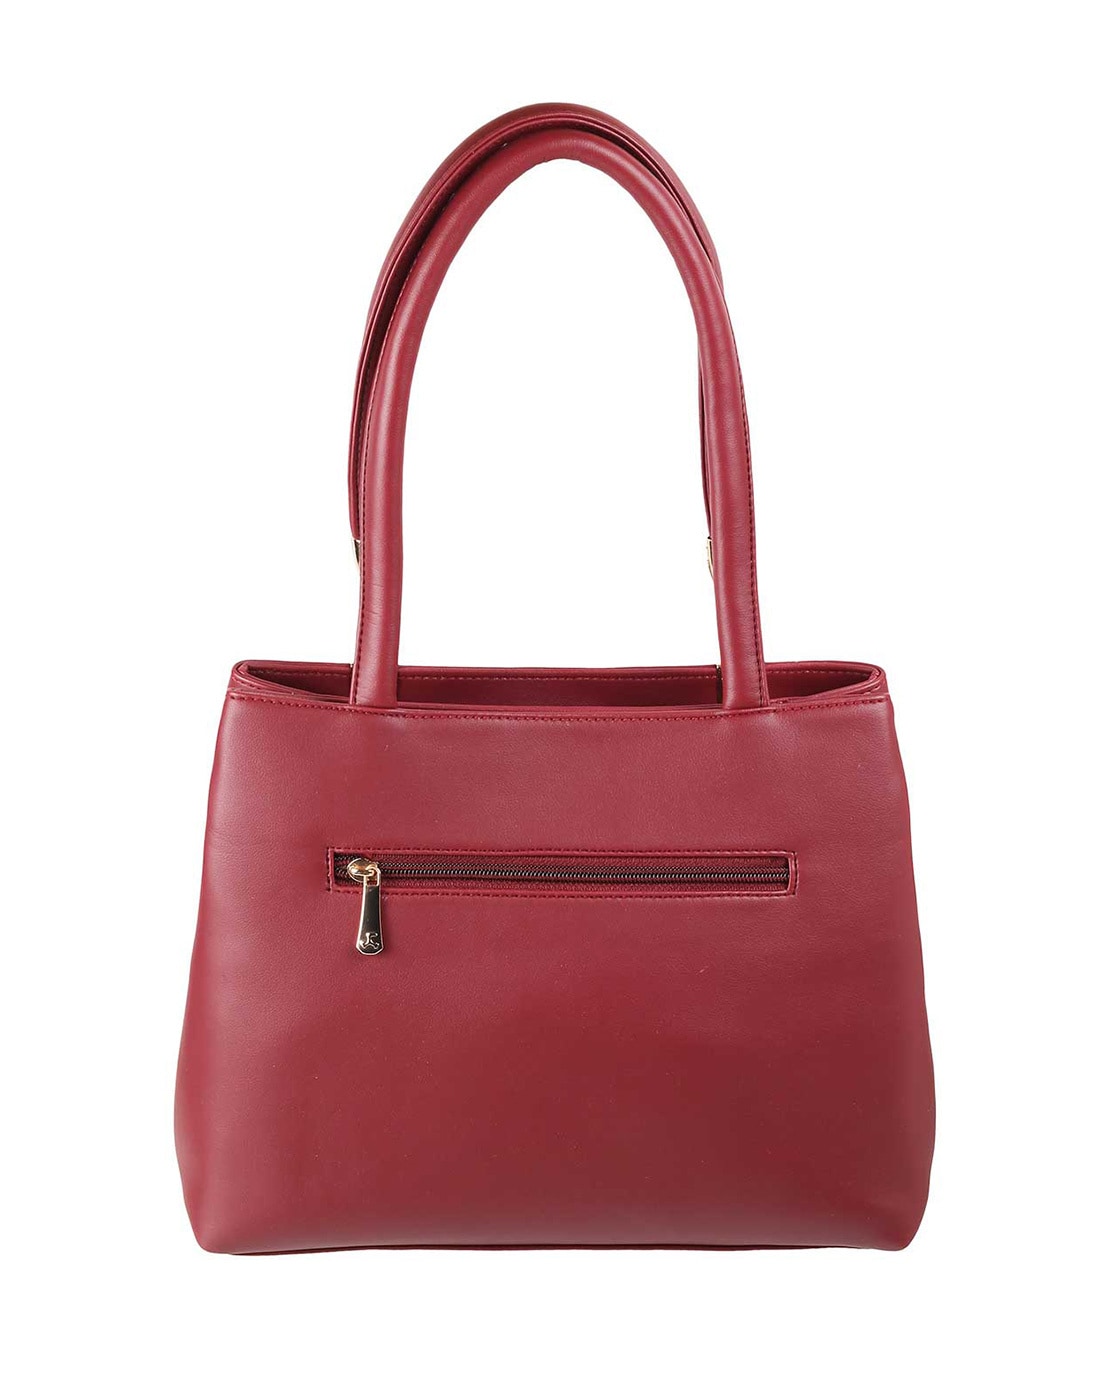 Polene Number Seven | Burgundy bag, Red bag outfit, Maroon bag